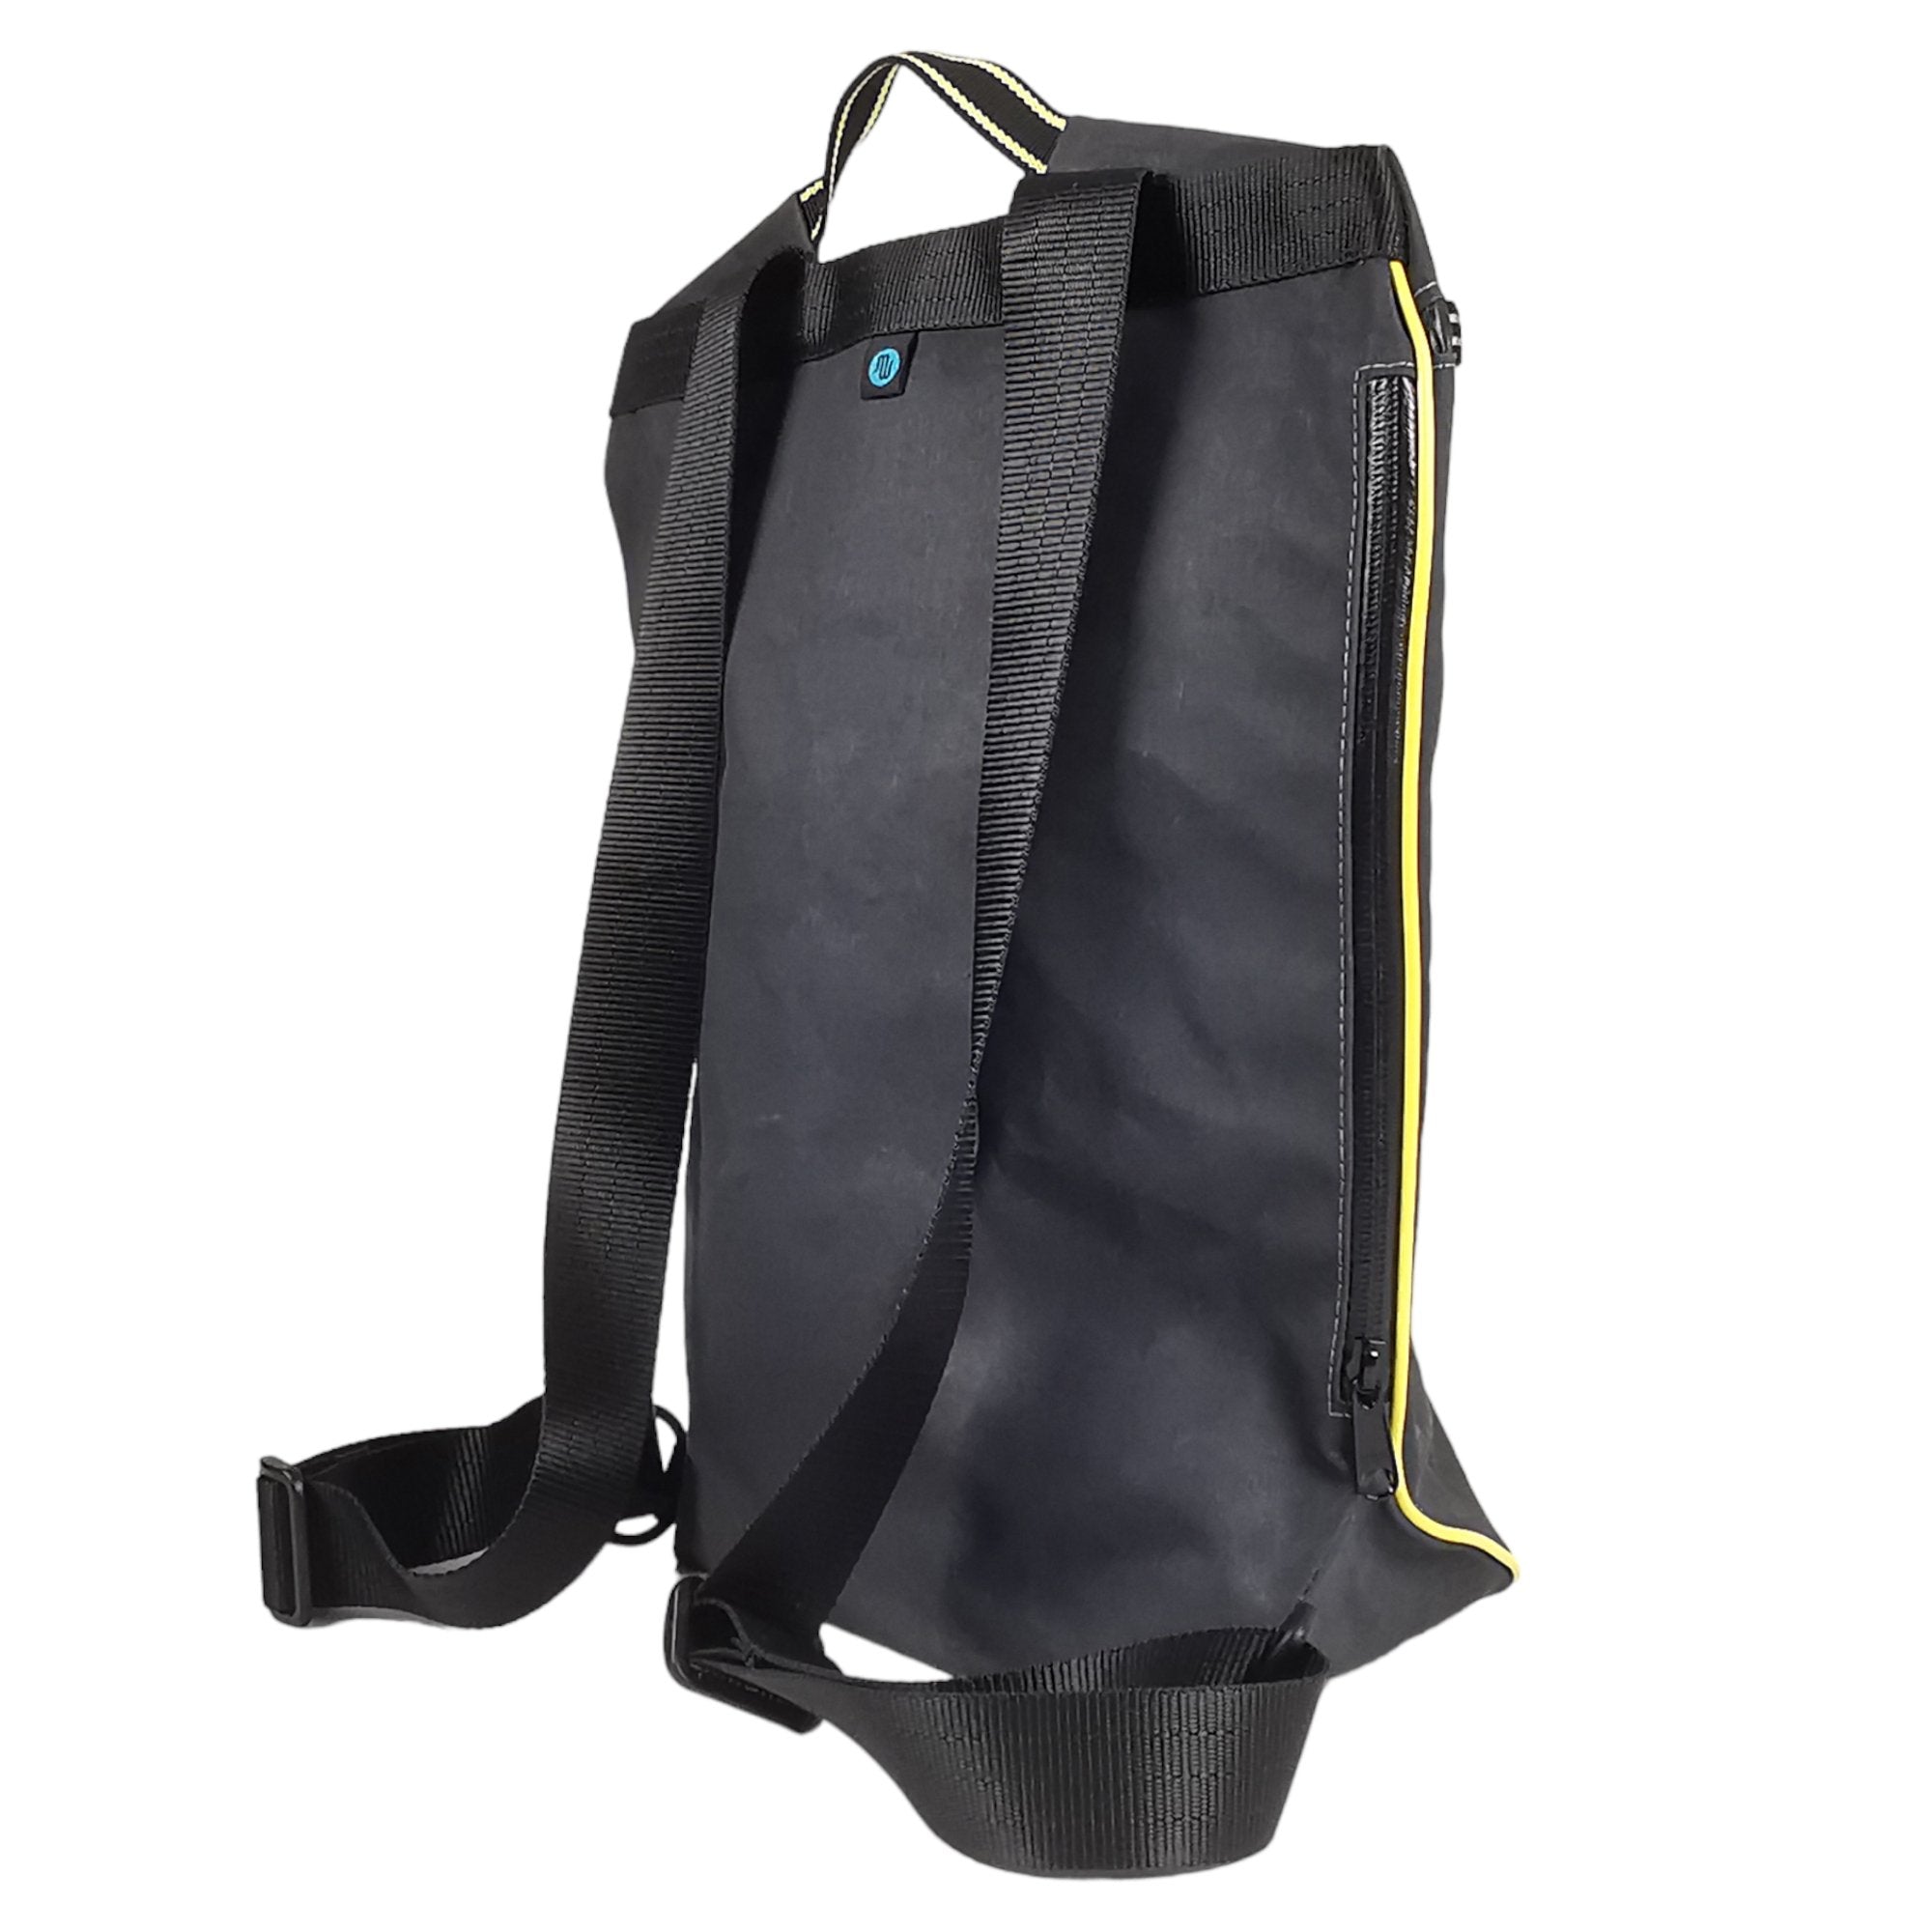 Backpack - BETA No. 004 - Backpacks - medencebag